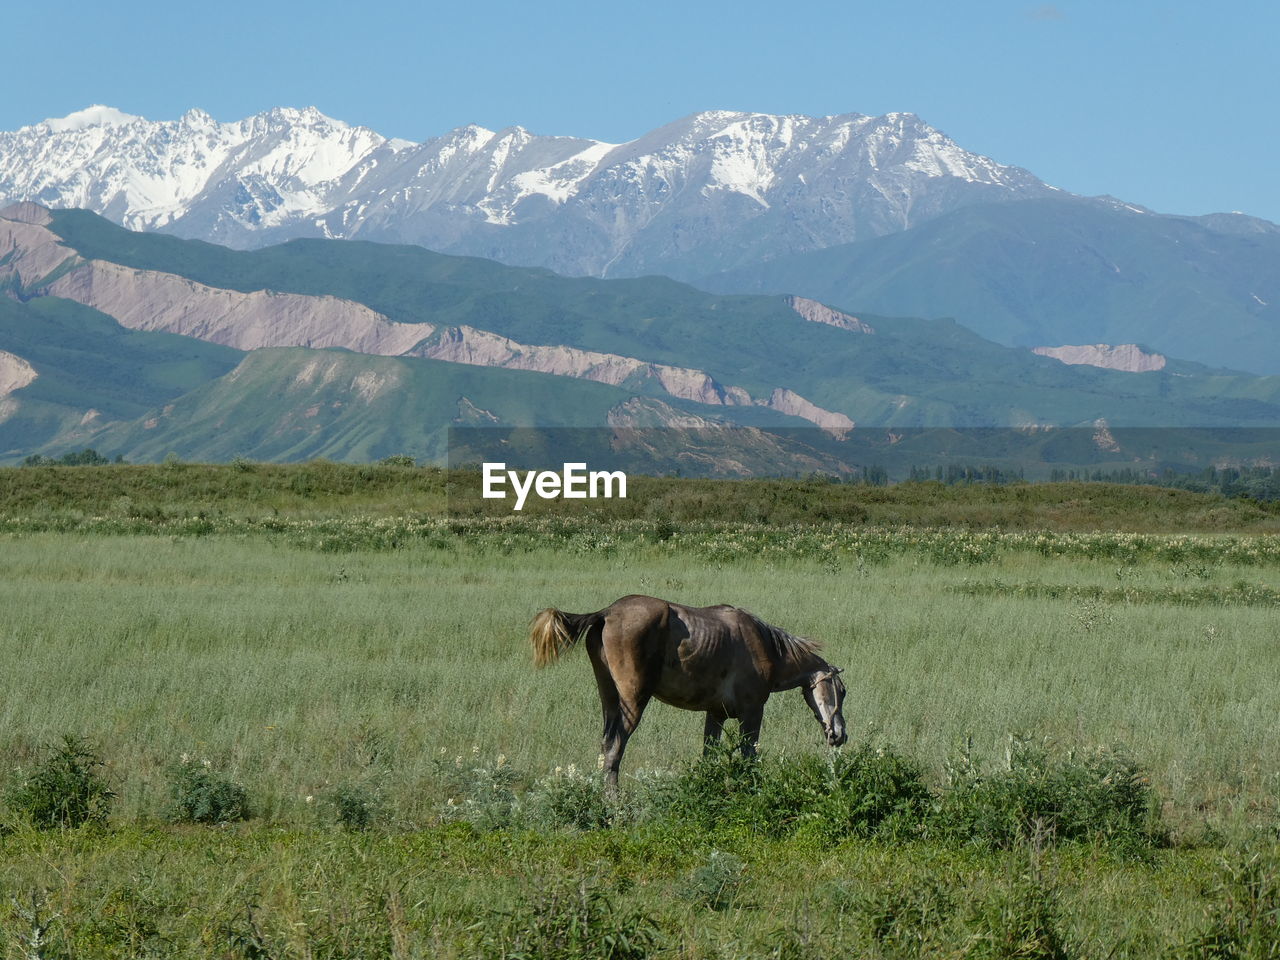 Horse next to the kyrgyzstan mountains 